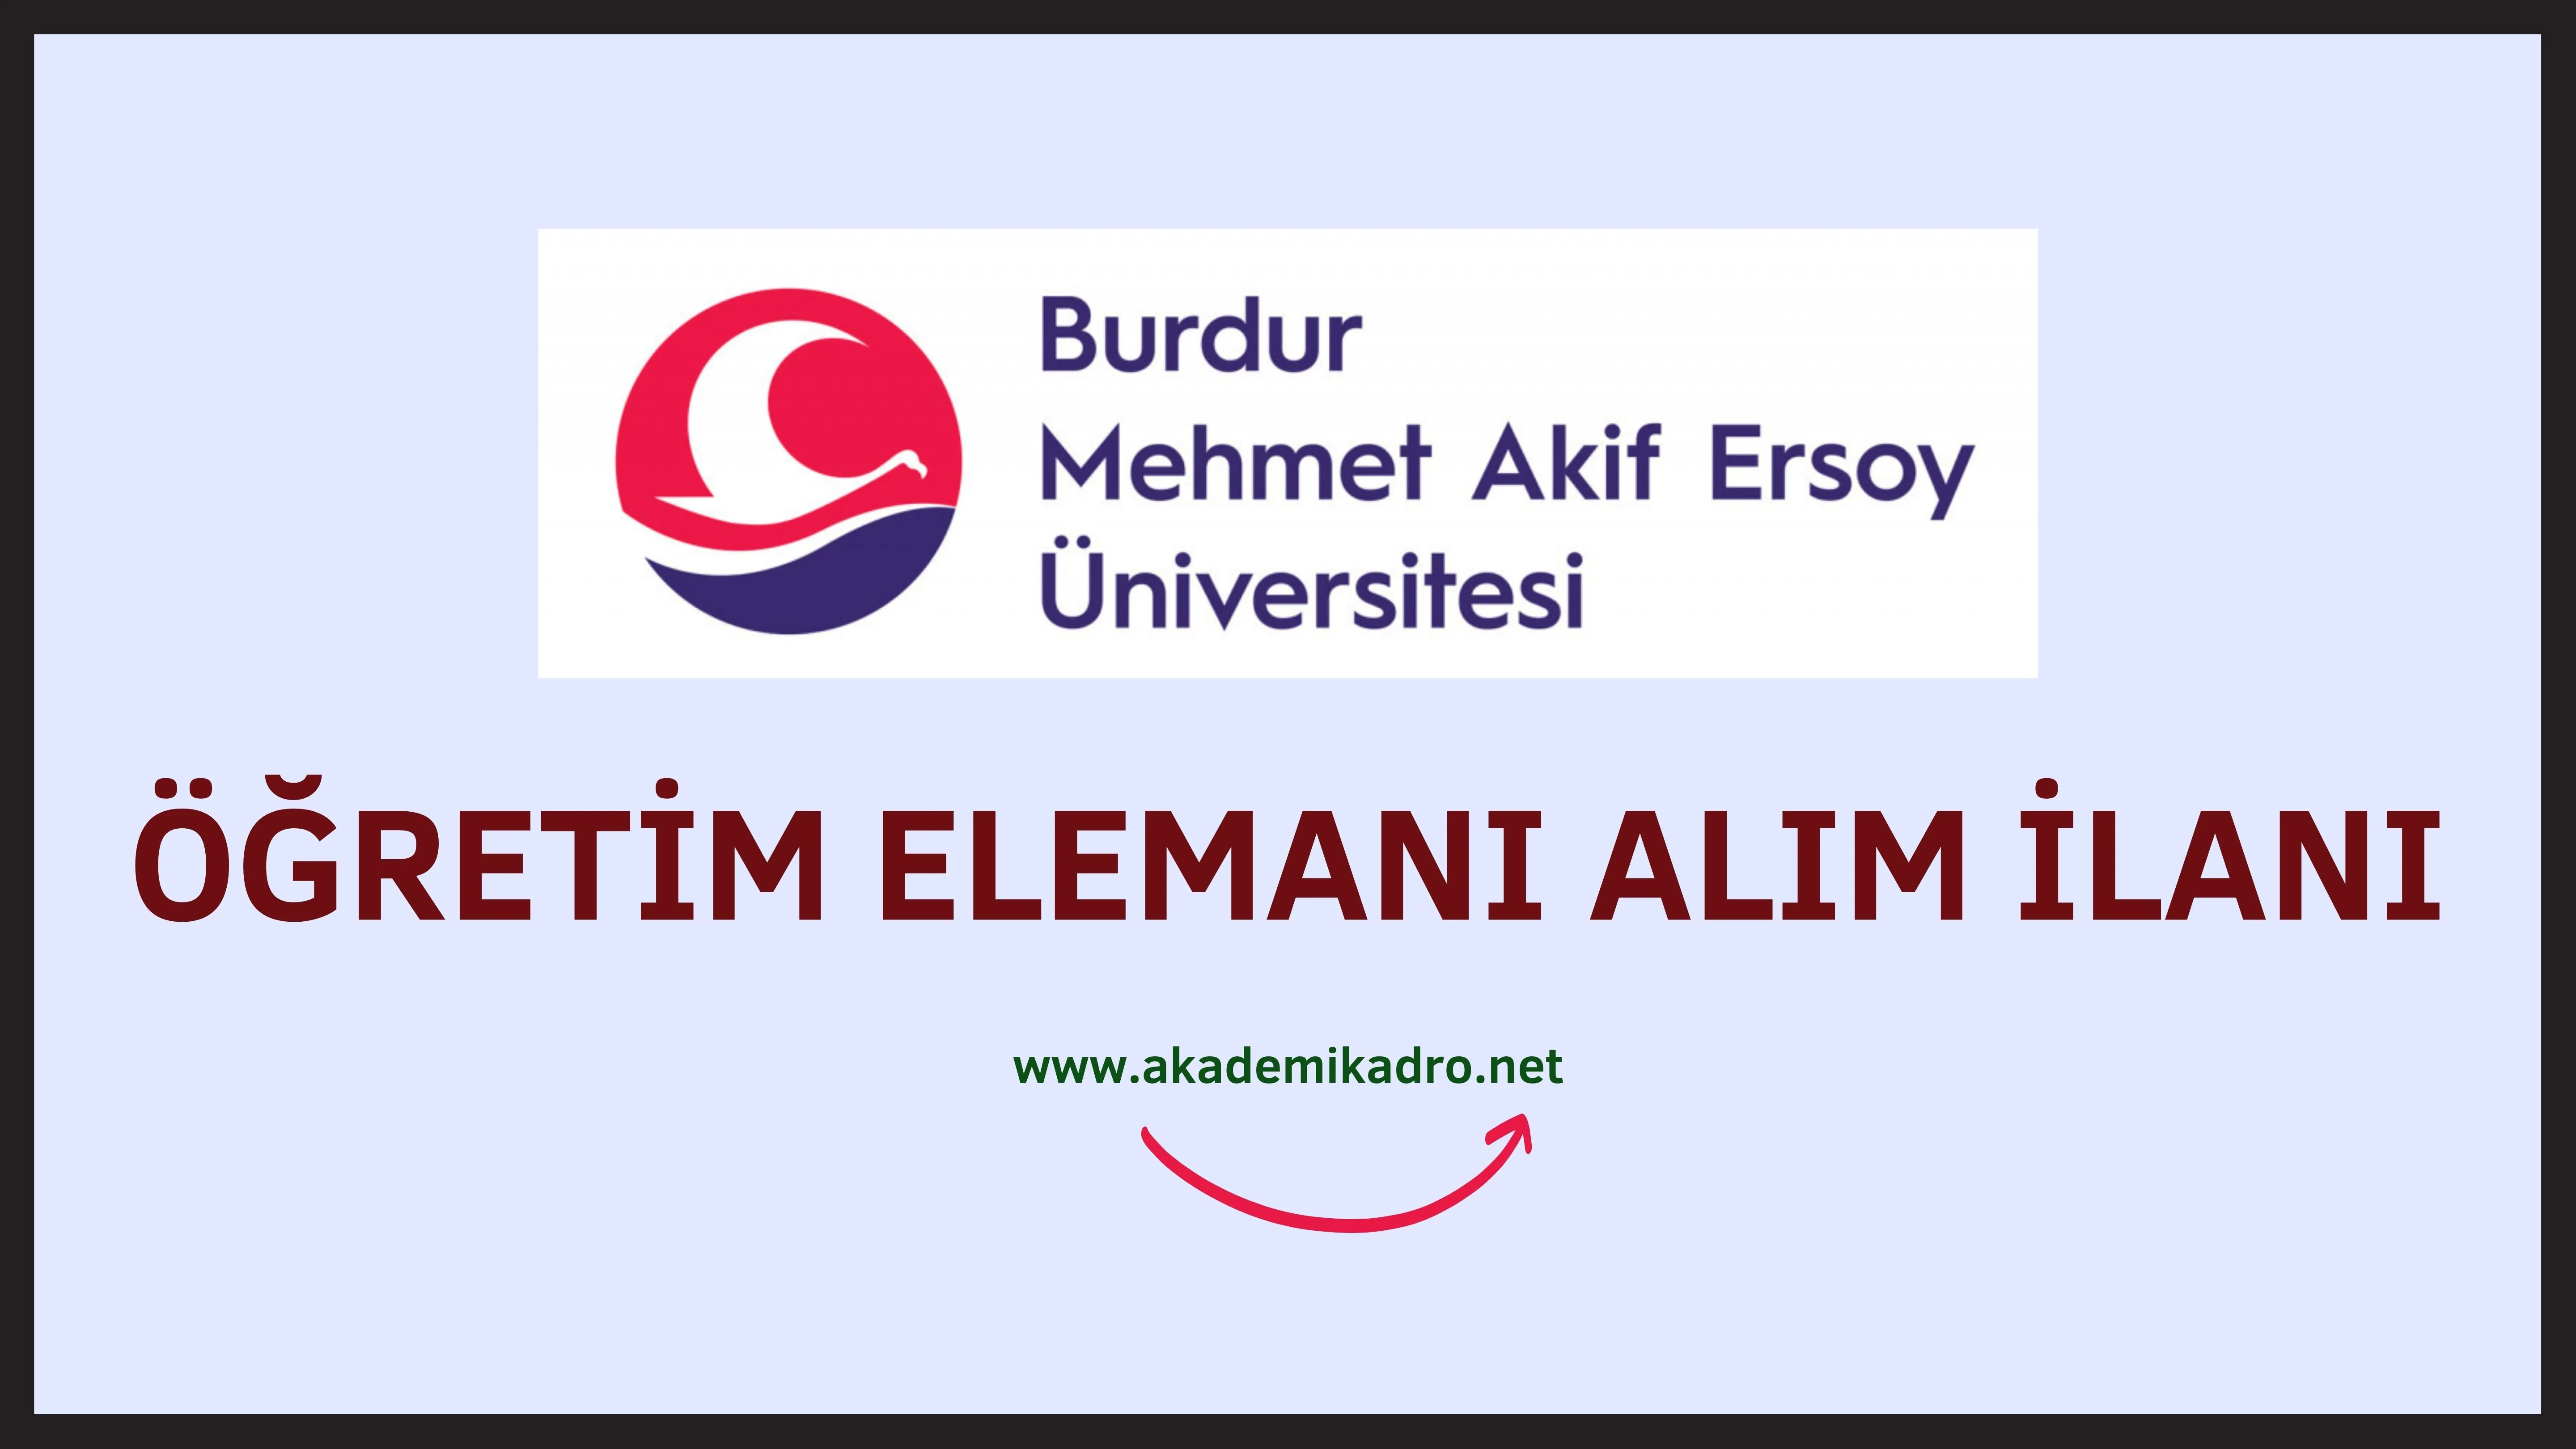 Burdur Mehmet Akif Ersoy Üniversitesi 10 Öğretim görevlisi alacaktır. Son başvuru tarihi 18 Ekim 2022